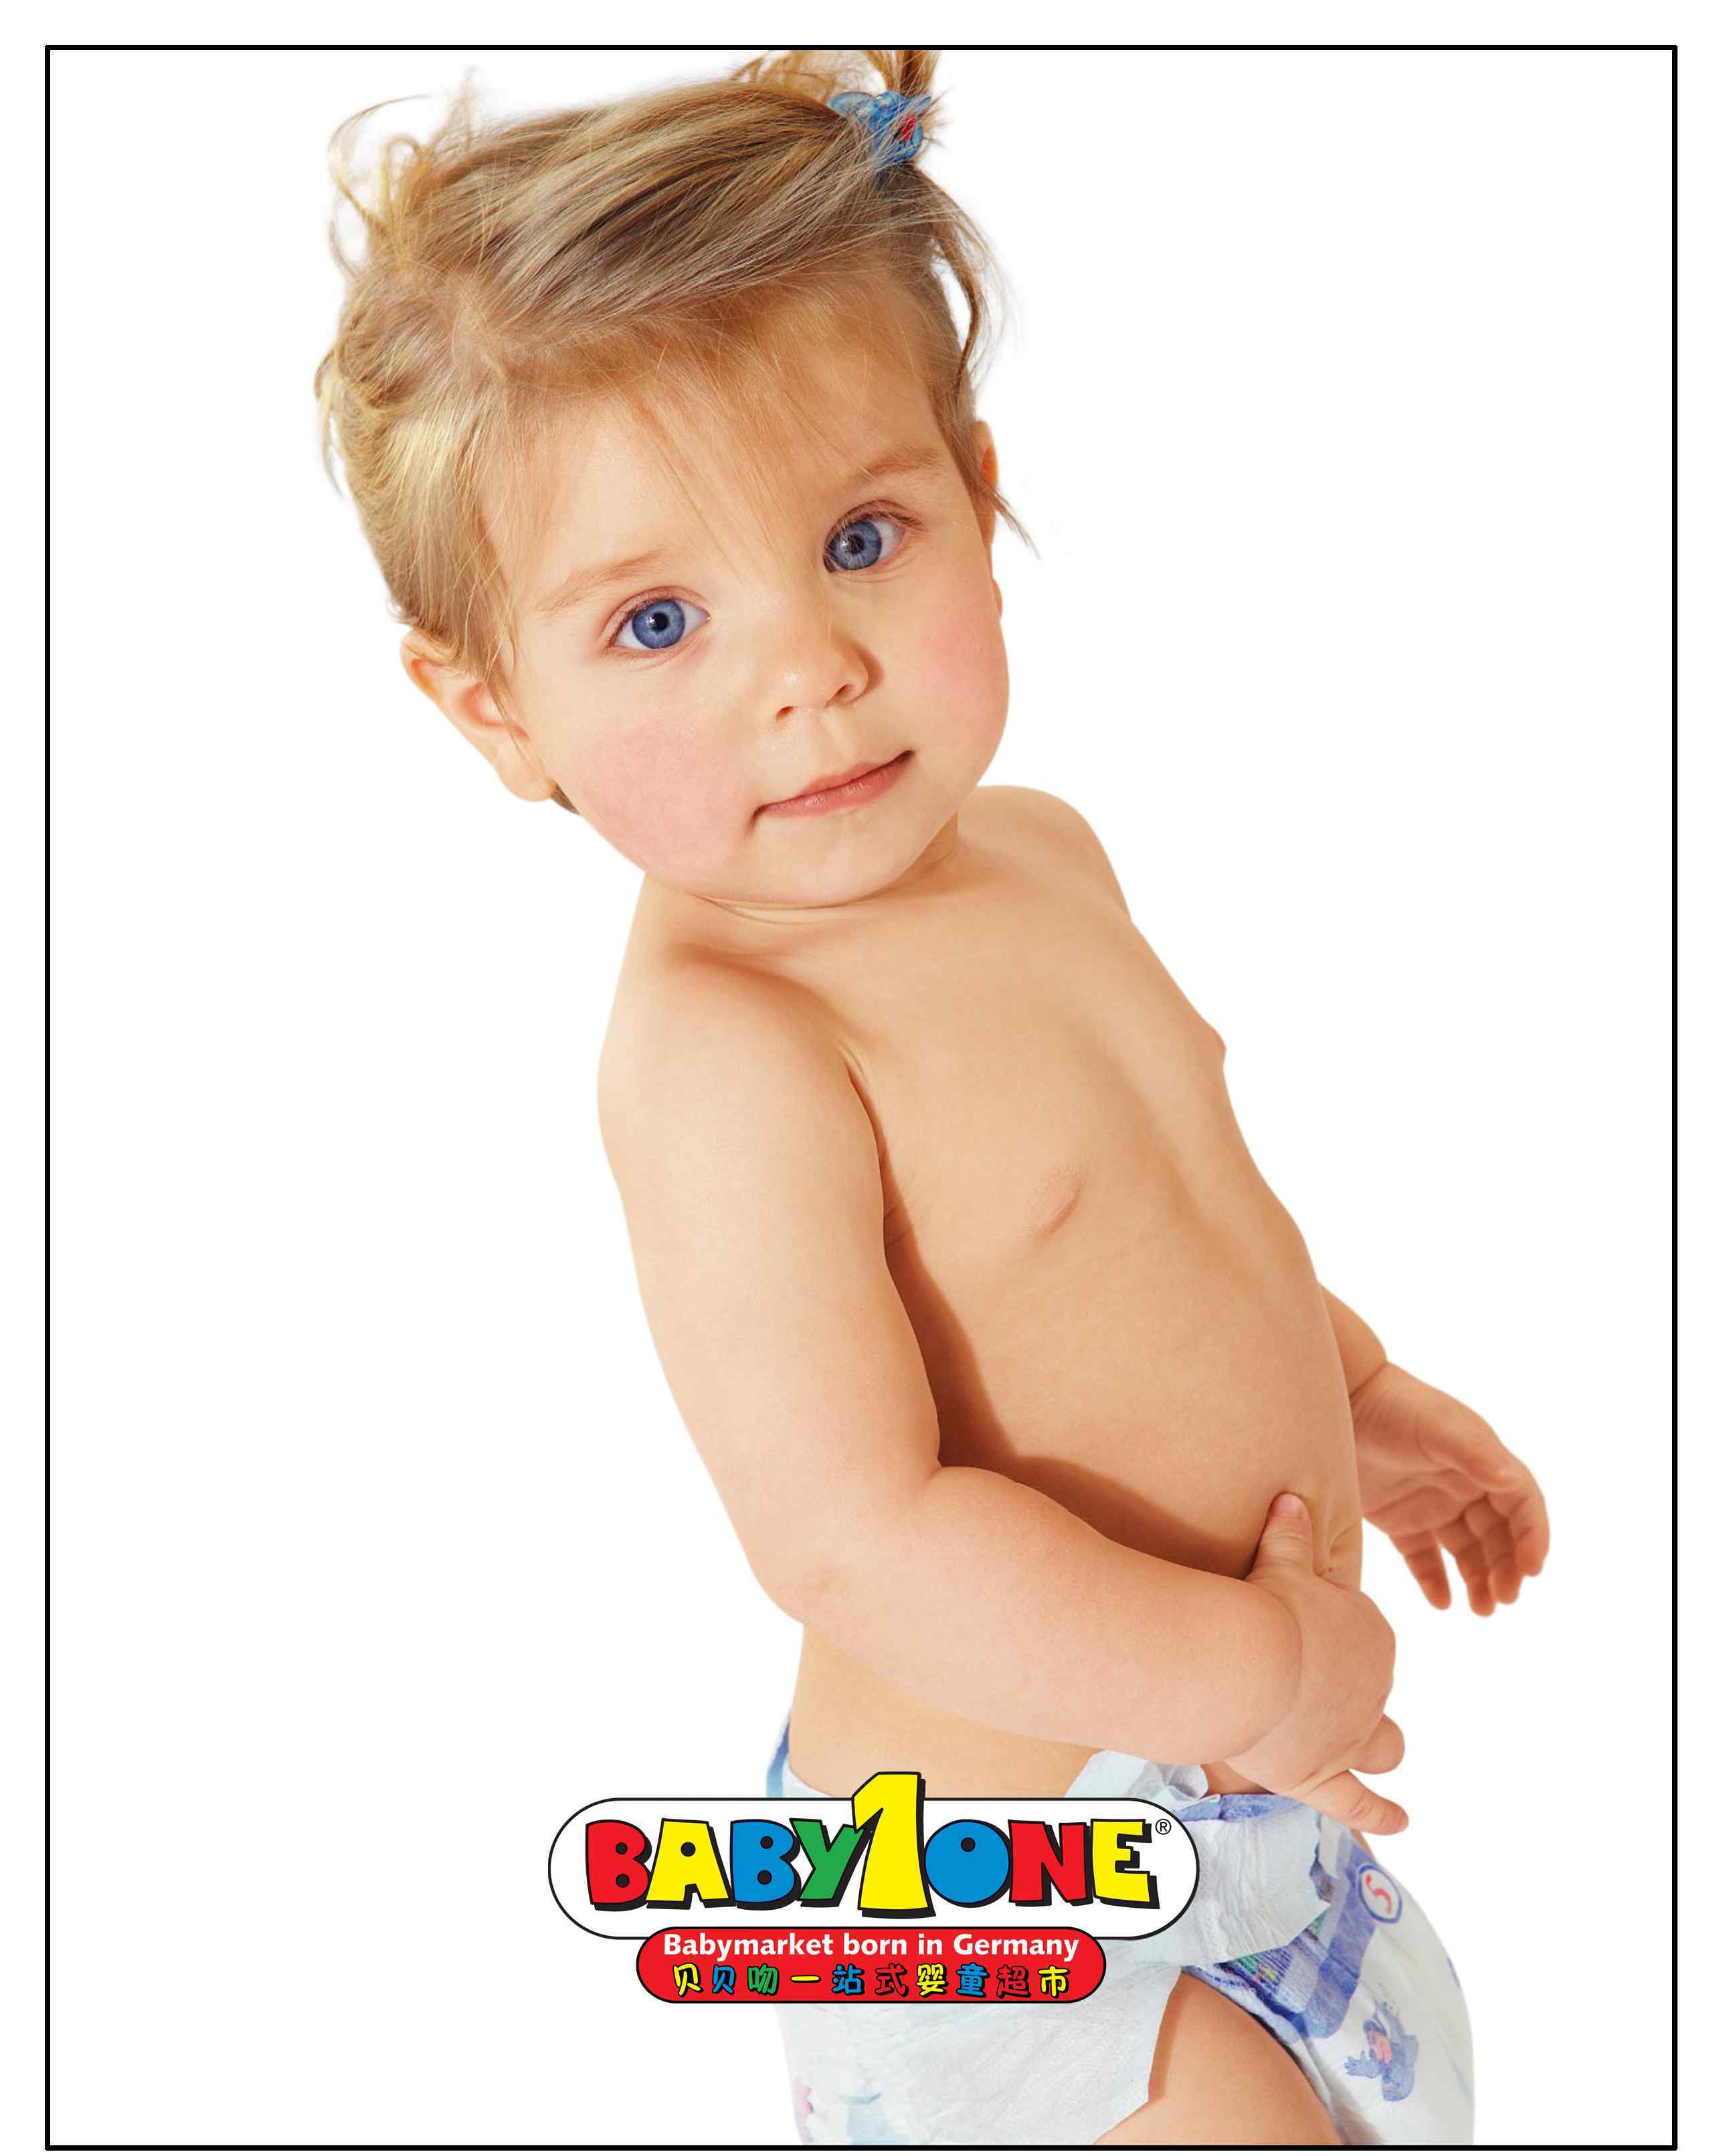 婴幼儿用品专卖店 全球婴幼儿用品专业店NO.1—BabyOne